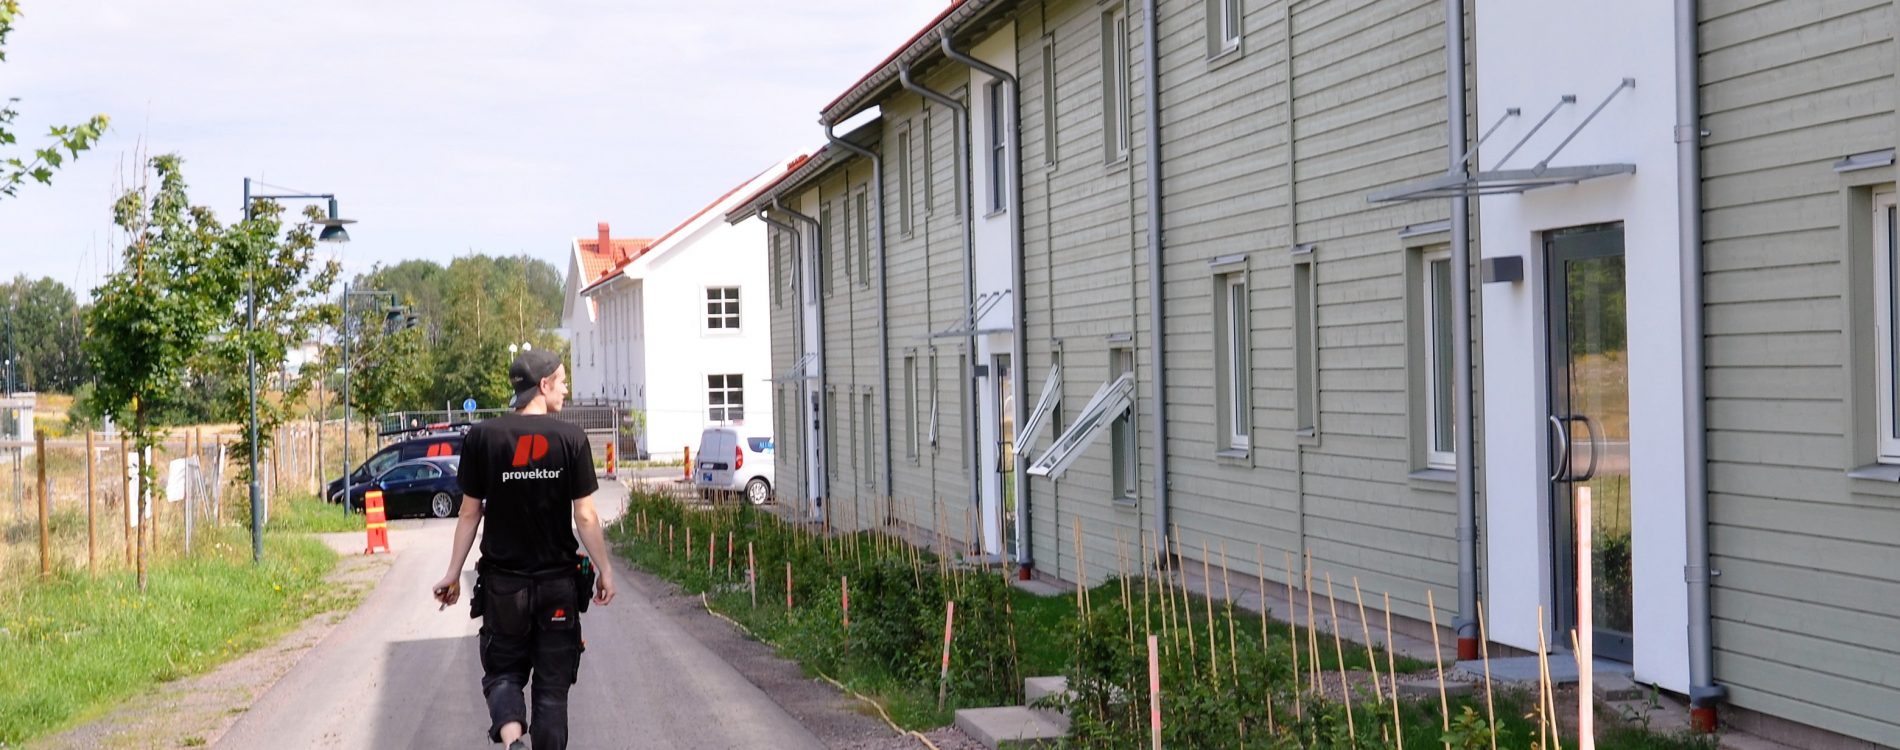 45 nya lägenheter i Trädgådsstaden